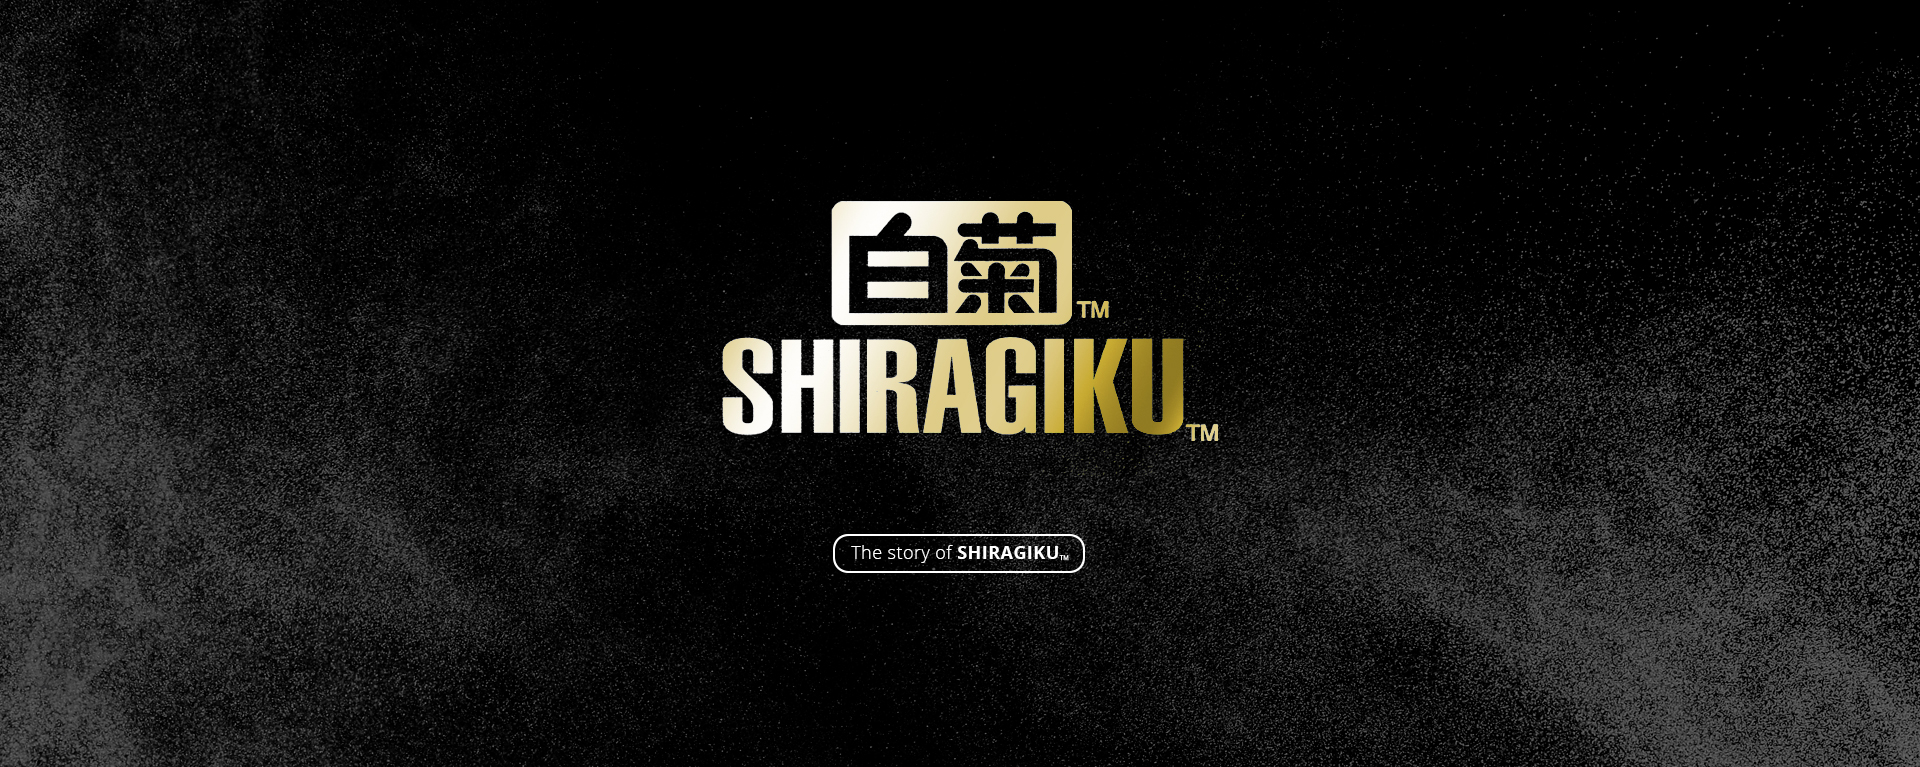 Shiragiku - The Story of Shiragiku